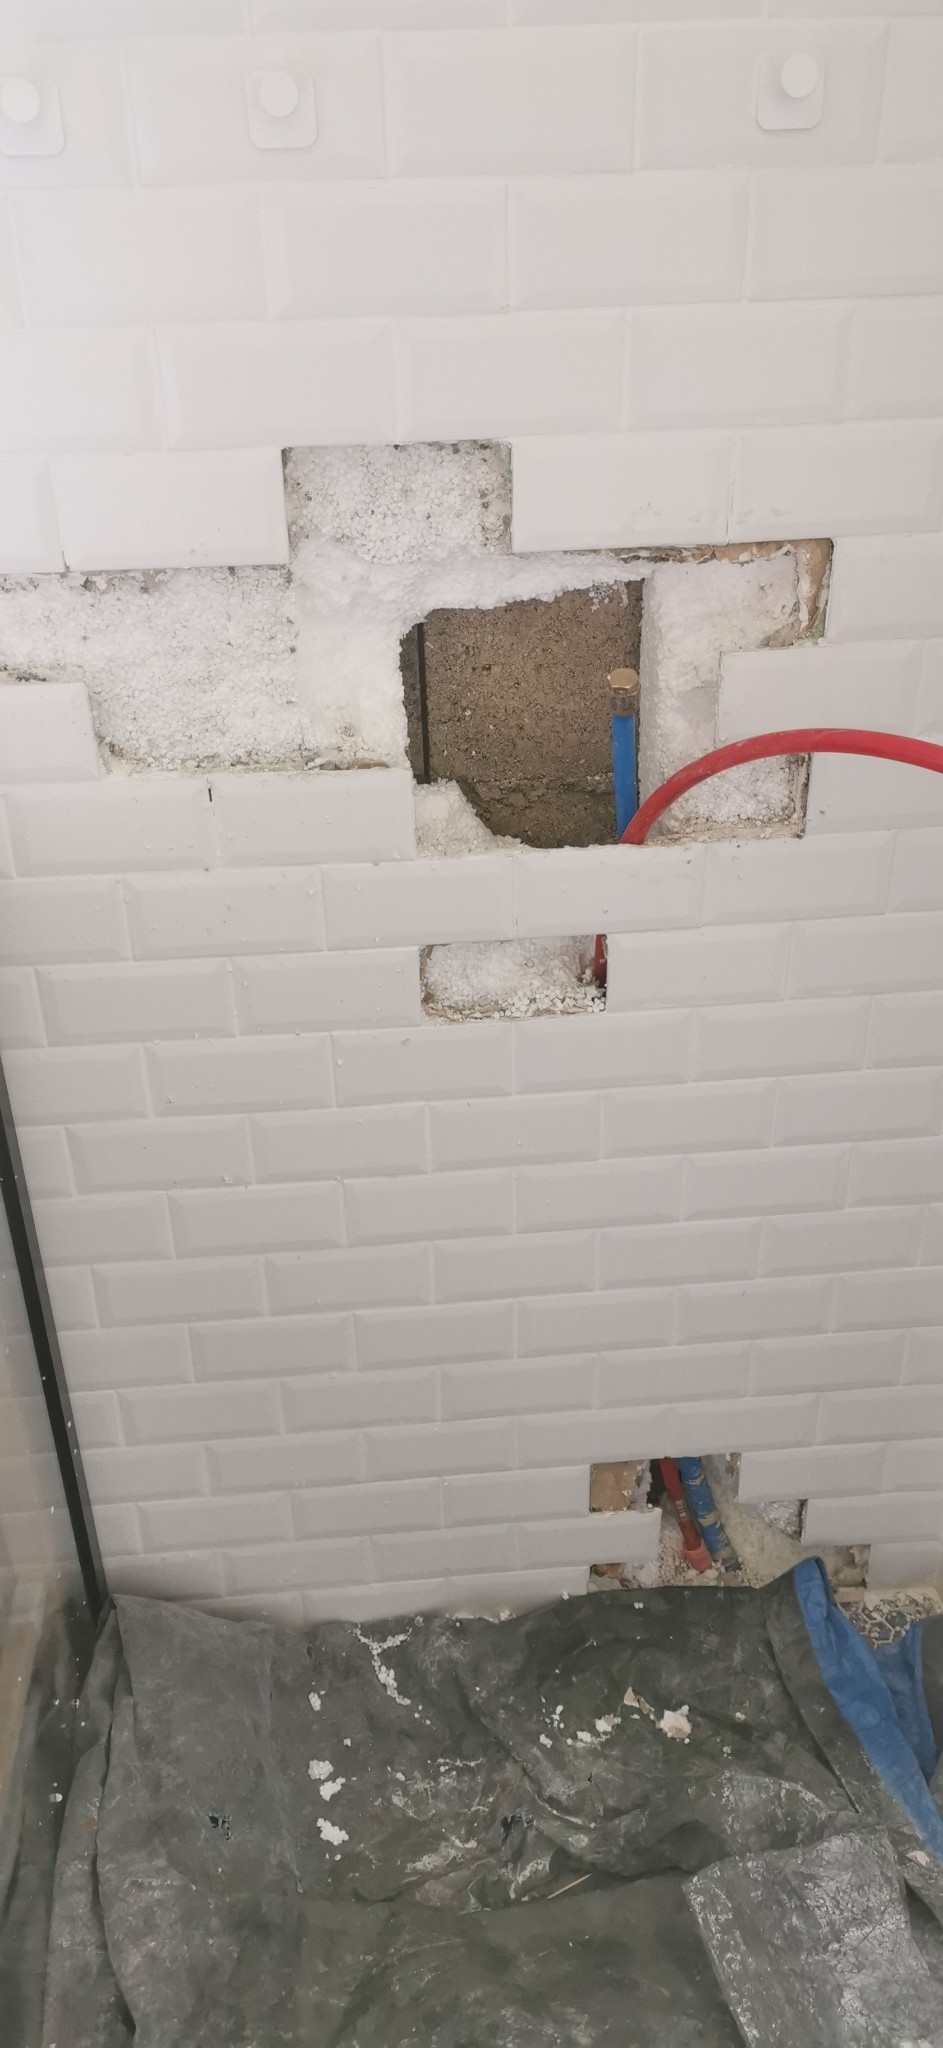 Réparation mur douche suite à fuite - 2